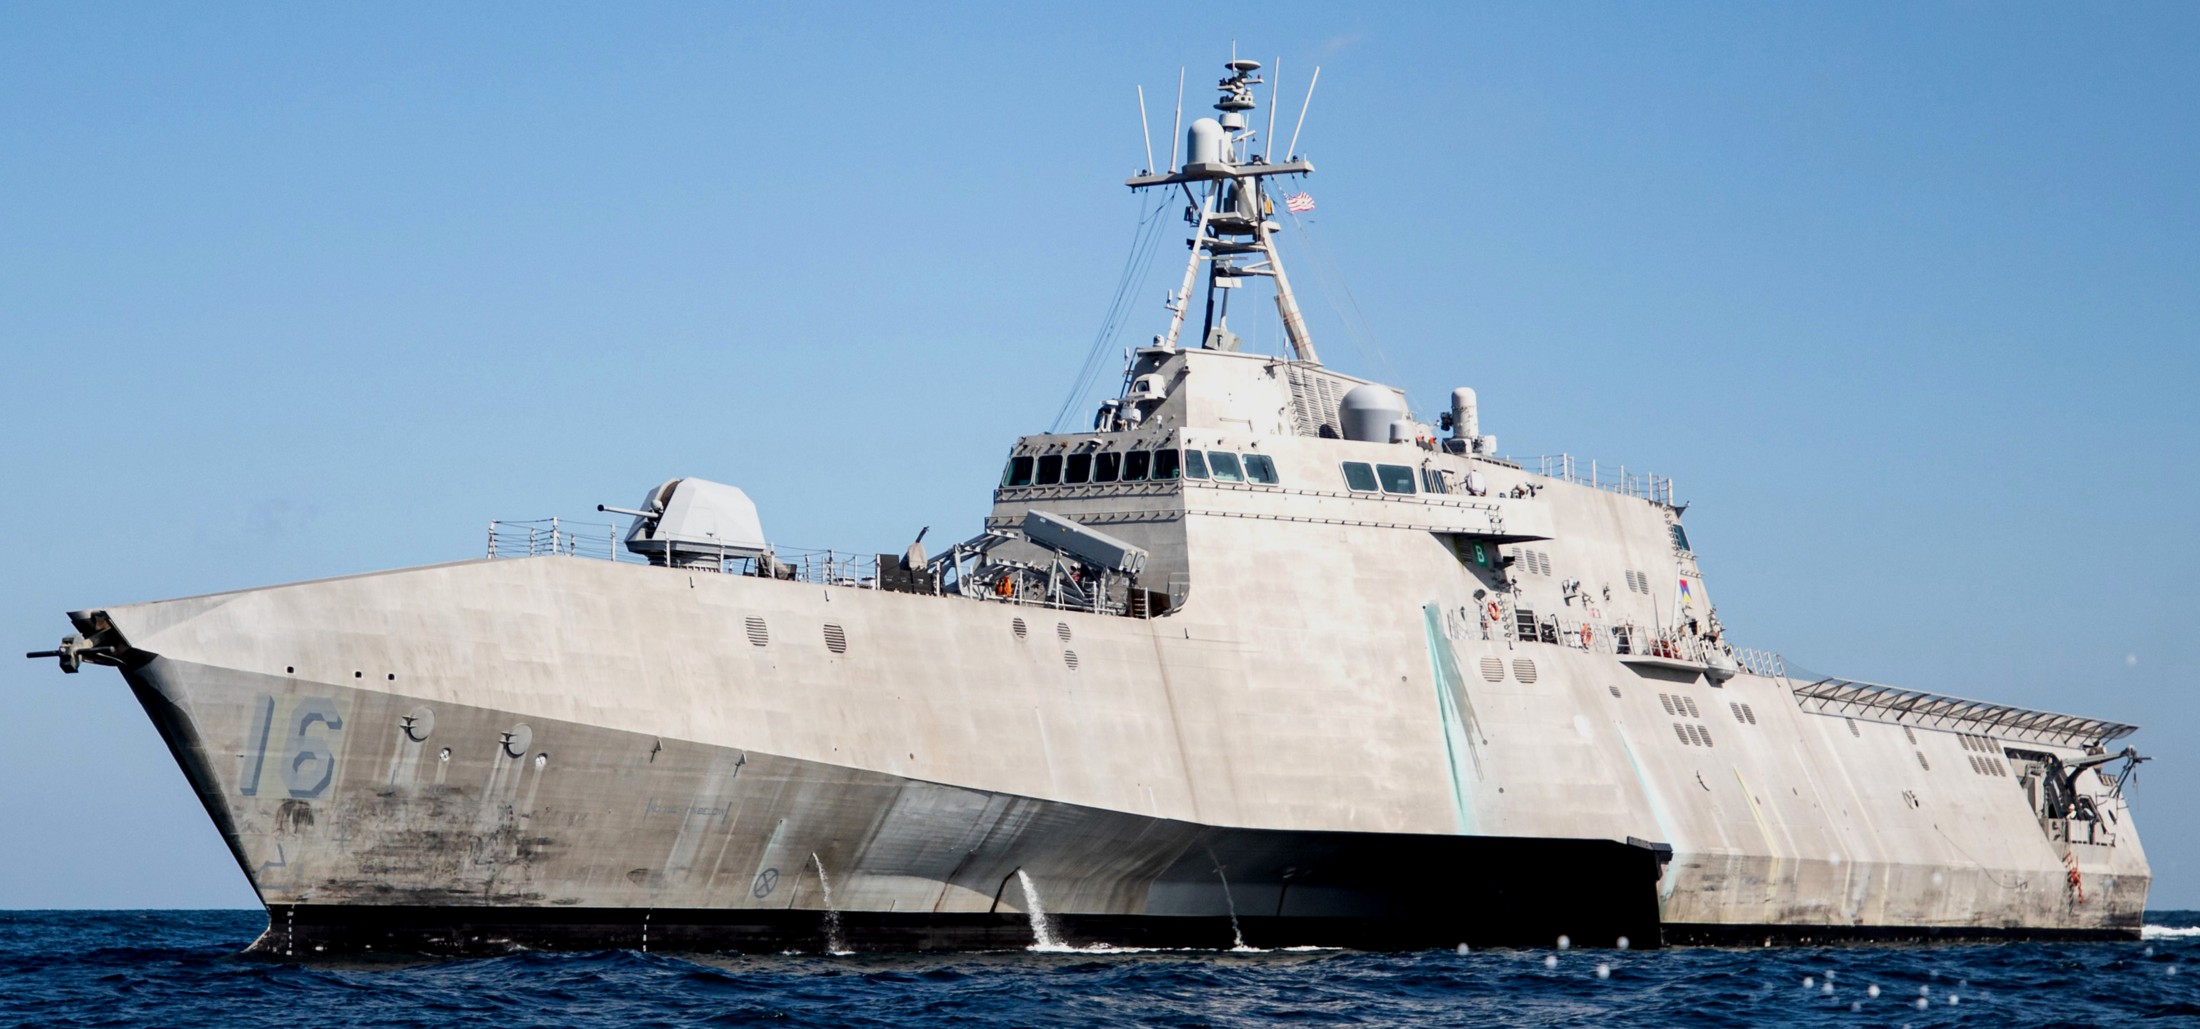 lcs-16 uss tulsa independence class littoral combat ship us navy 56